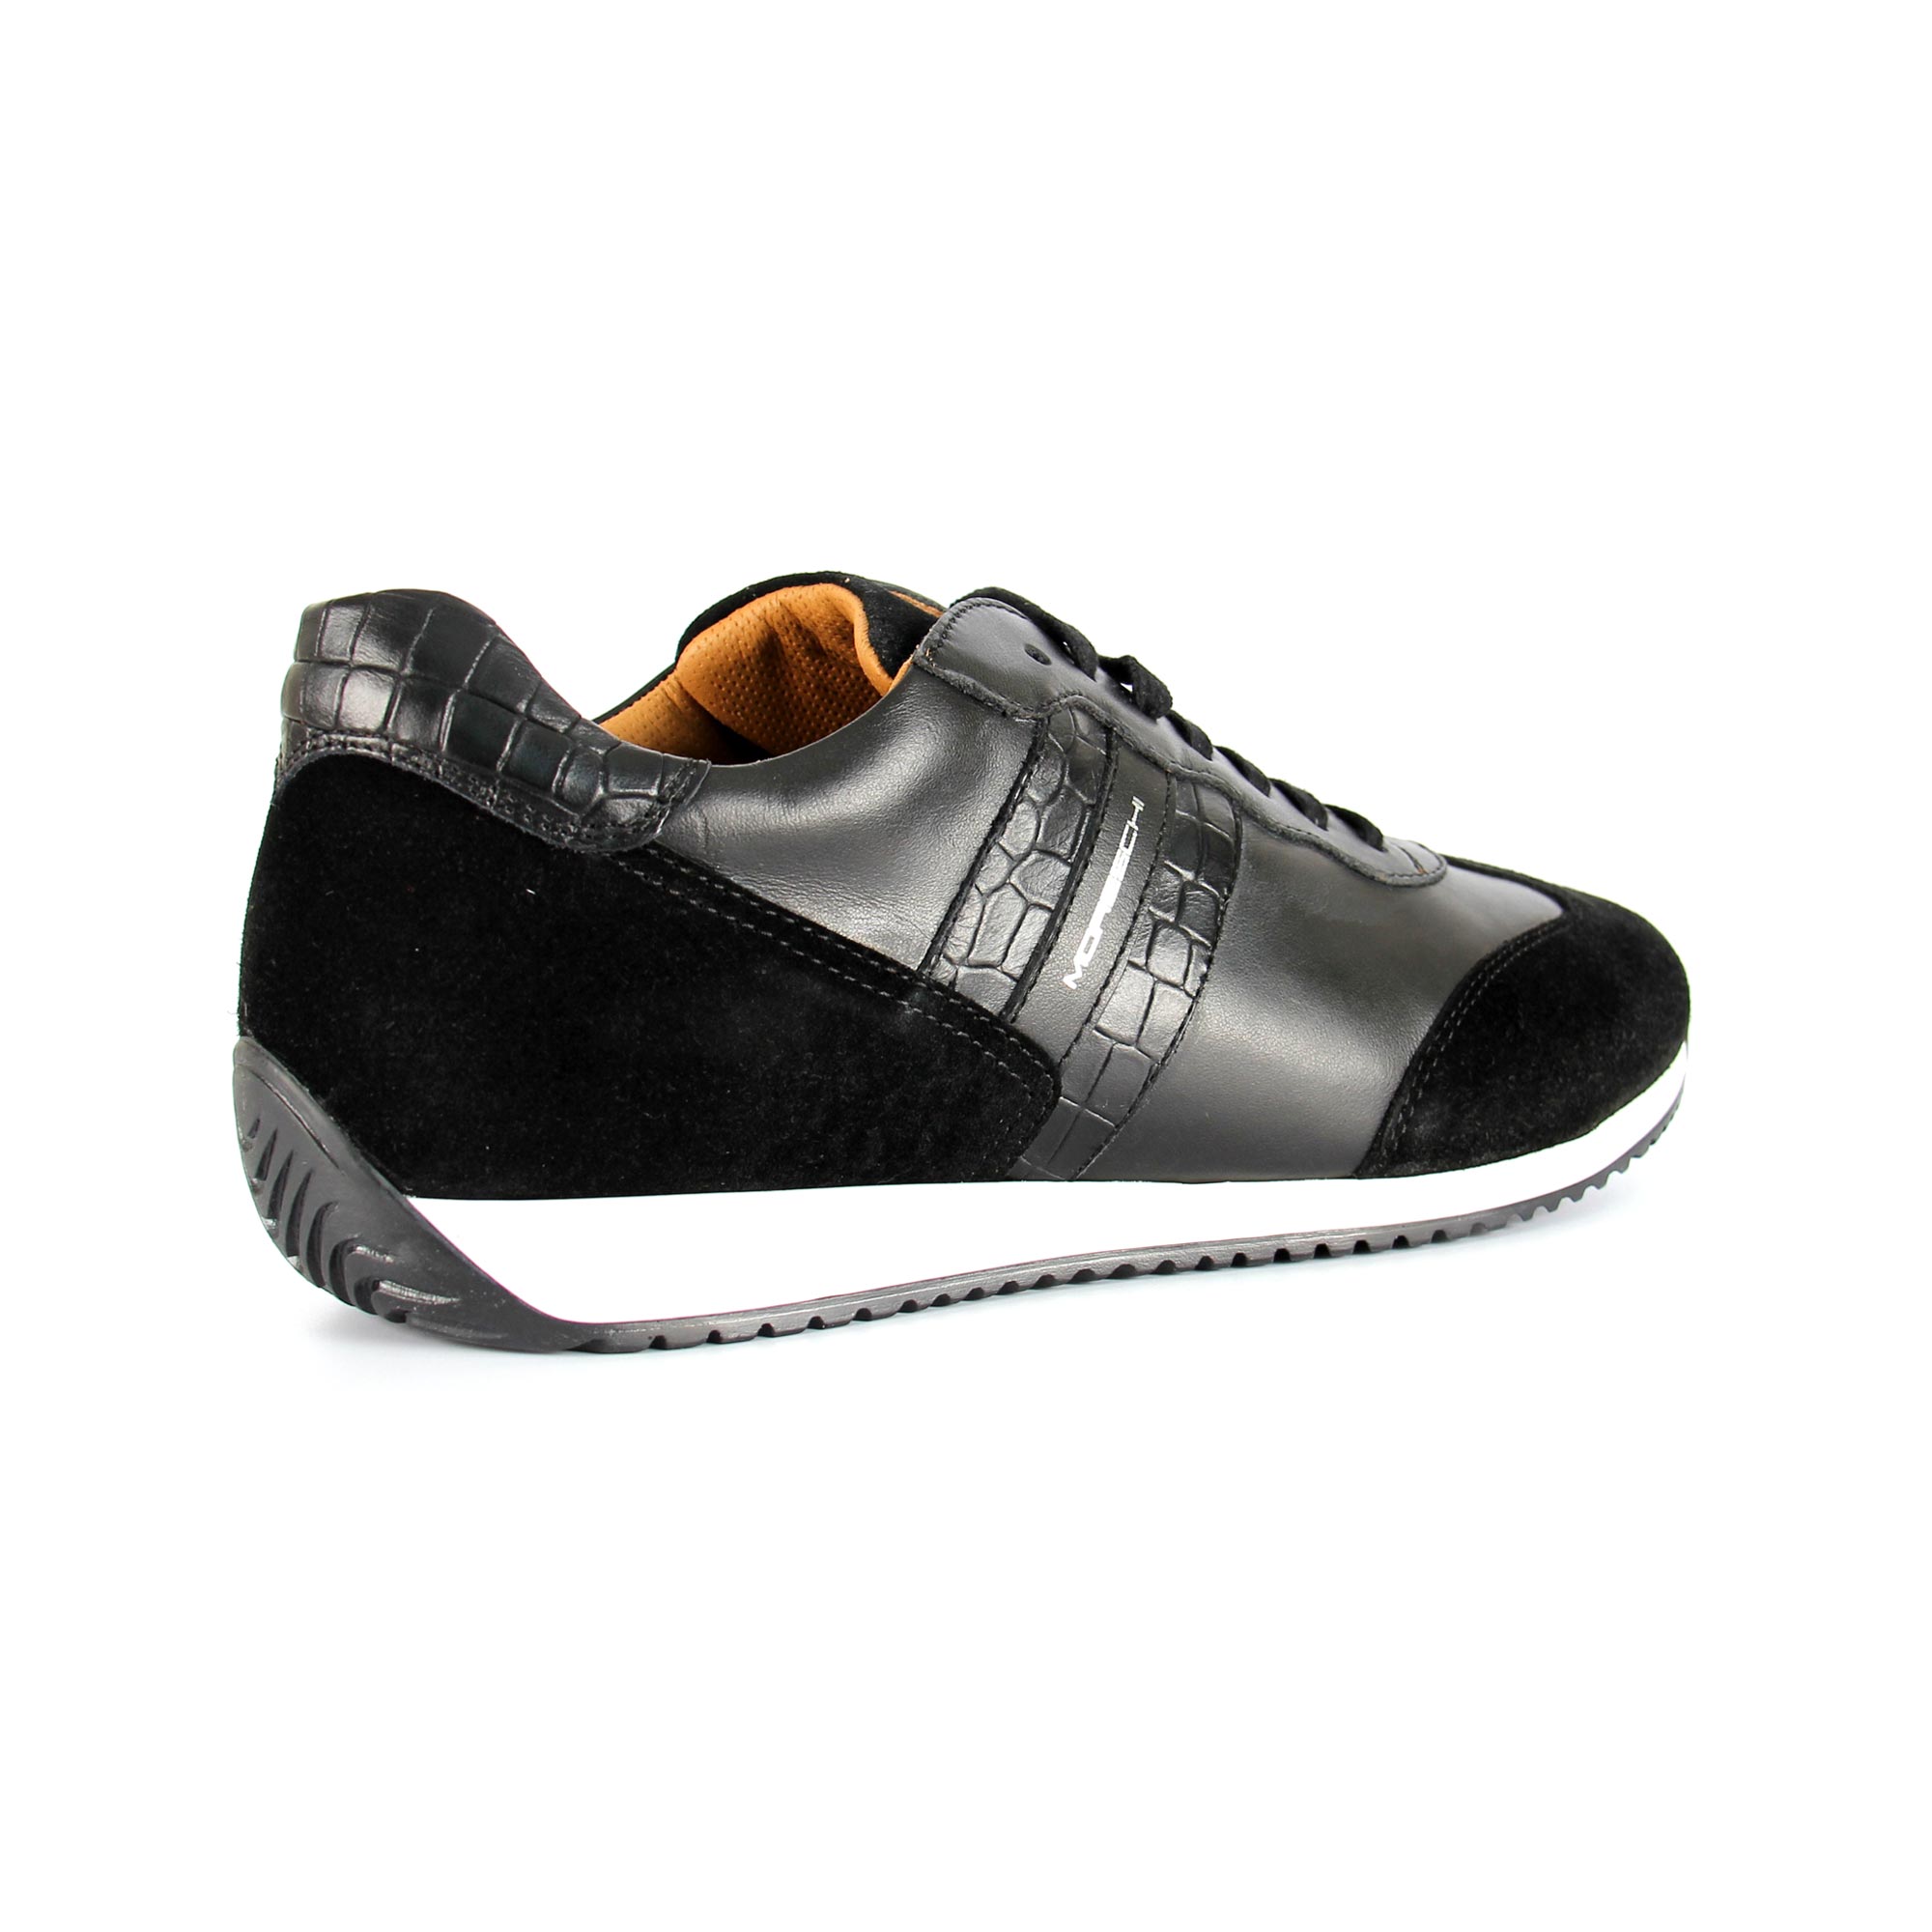 moreschi mens sneakers 8 | eBay